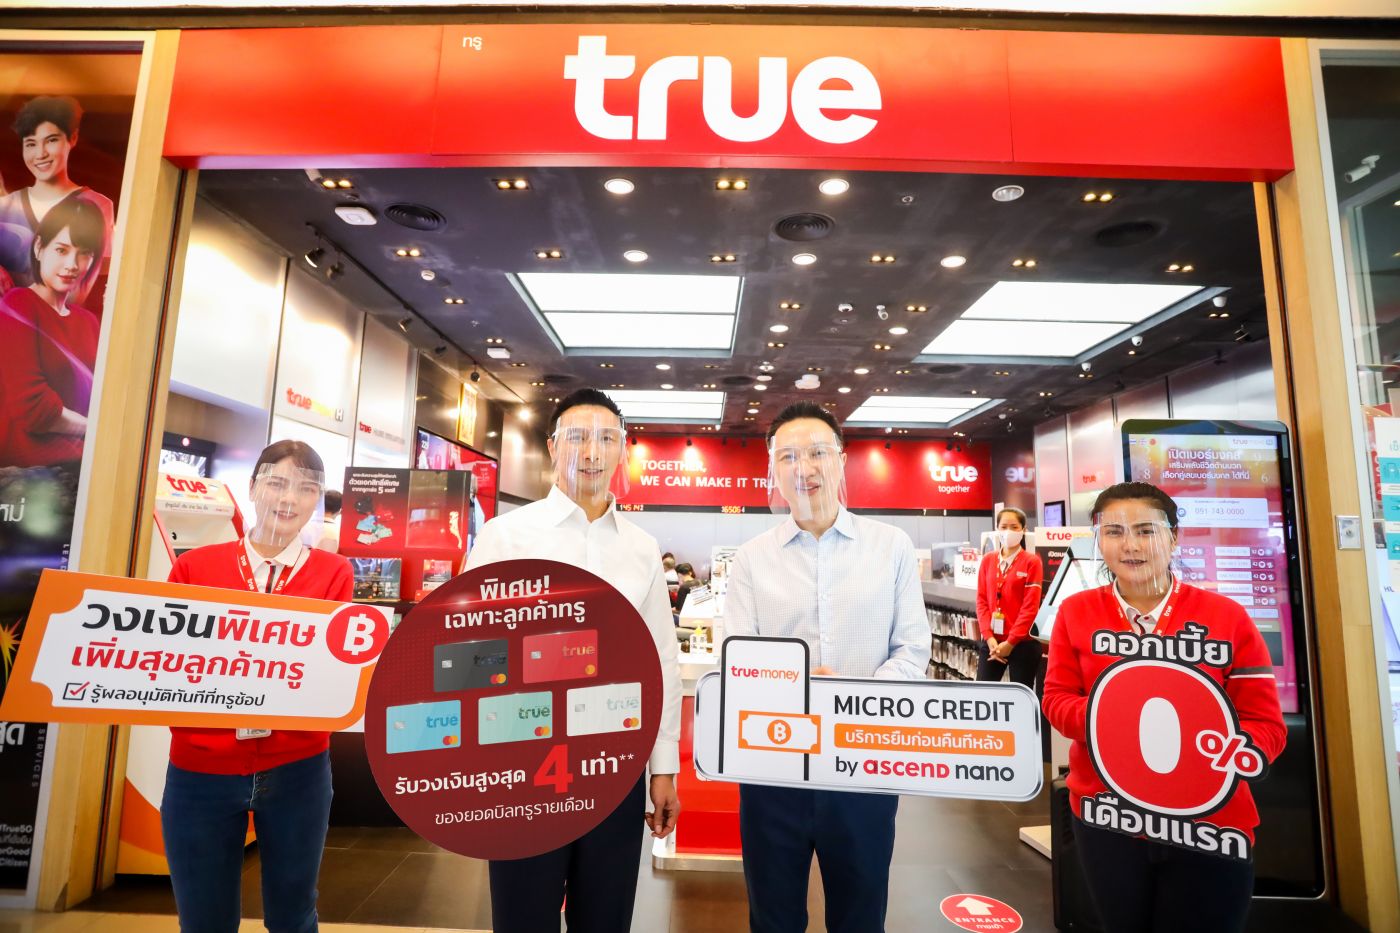 ปรากฏการณ์ใหม่เพิ่มสุขลูกค้าทรู…ทรูมันนี่ และ แอสเซนด์ นาโน เปิดตัว นวัตกรรมการเงิน “Micro Credit บริการยืมก่อน คืนทีหลัง” ครั้งแรกในไทย! เพิ่มสภาพคล่องให้ลูกค้าทรูมูฟ เอชรายเดือน และผู้ถือบัตรทรูการ์ด ใช้จ่ายไม่สะดุด ผ่านอีวอลเล็ท